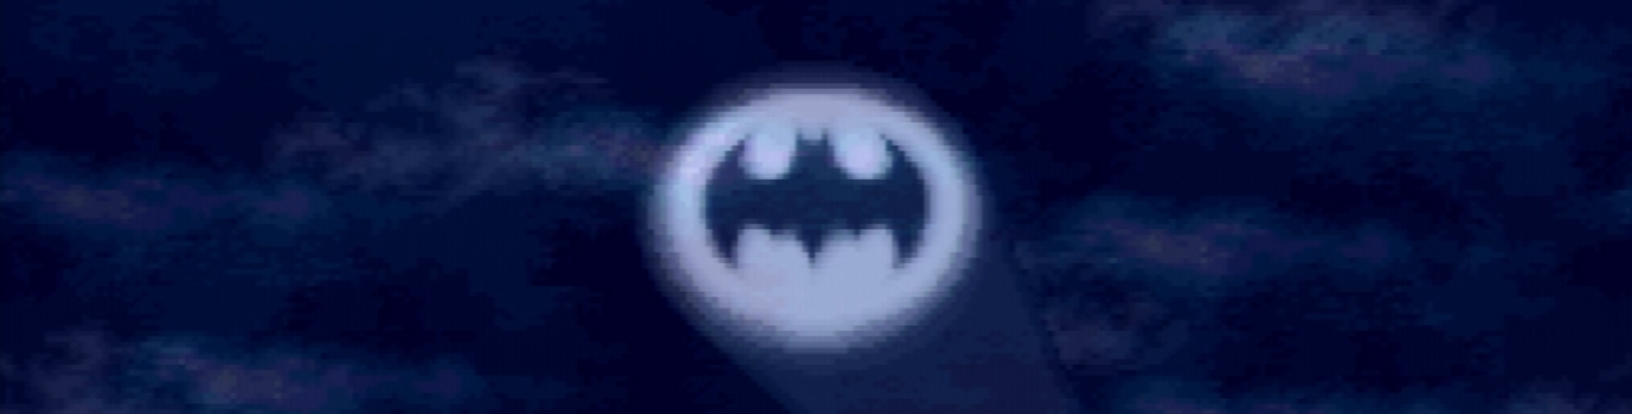 Batman Returns (Super Nintendo) Review 2